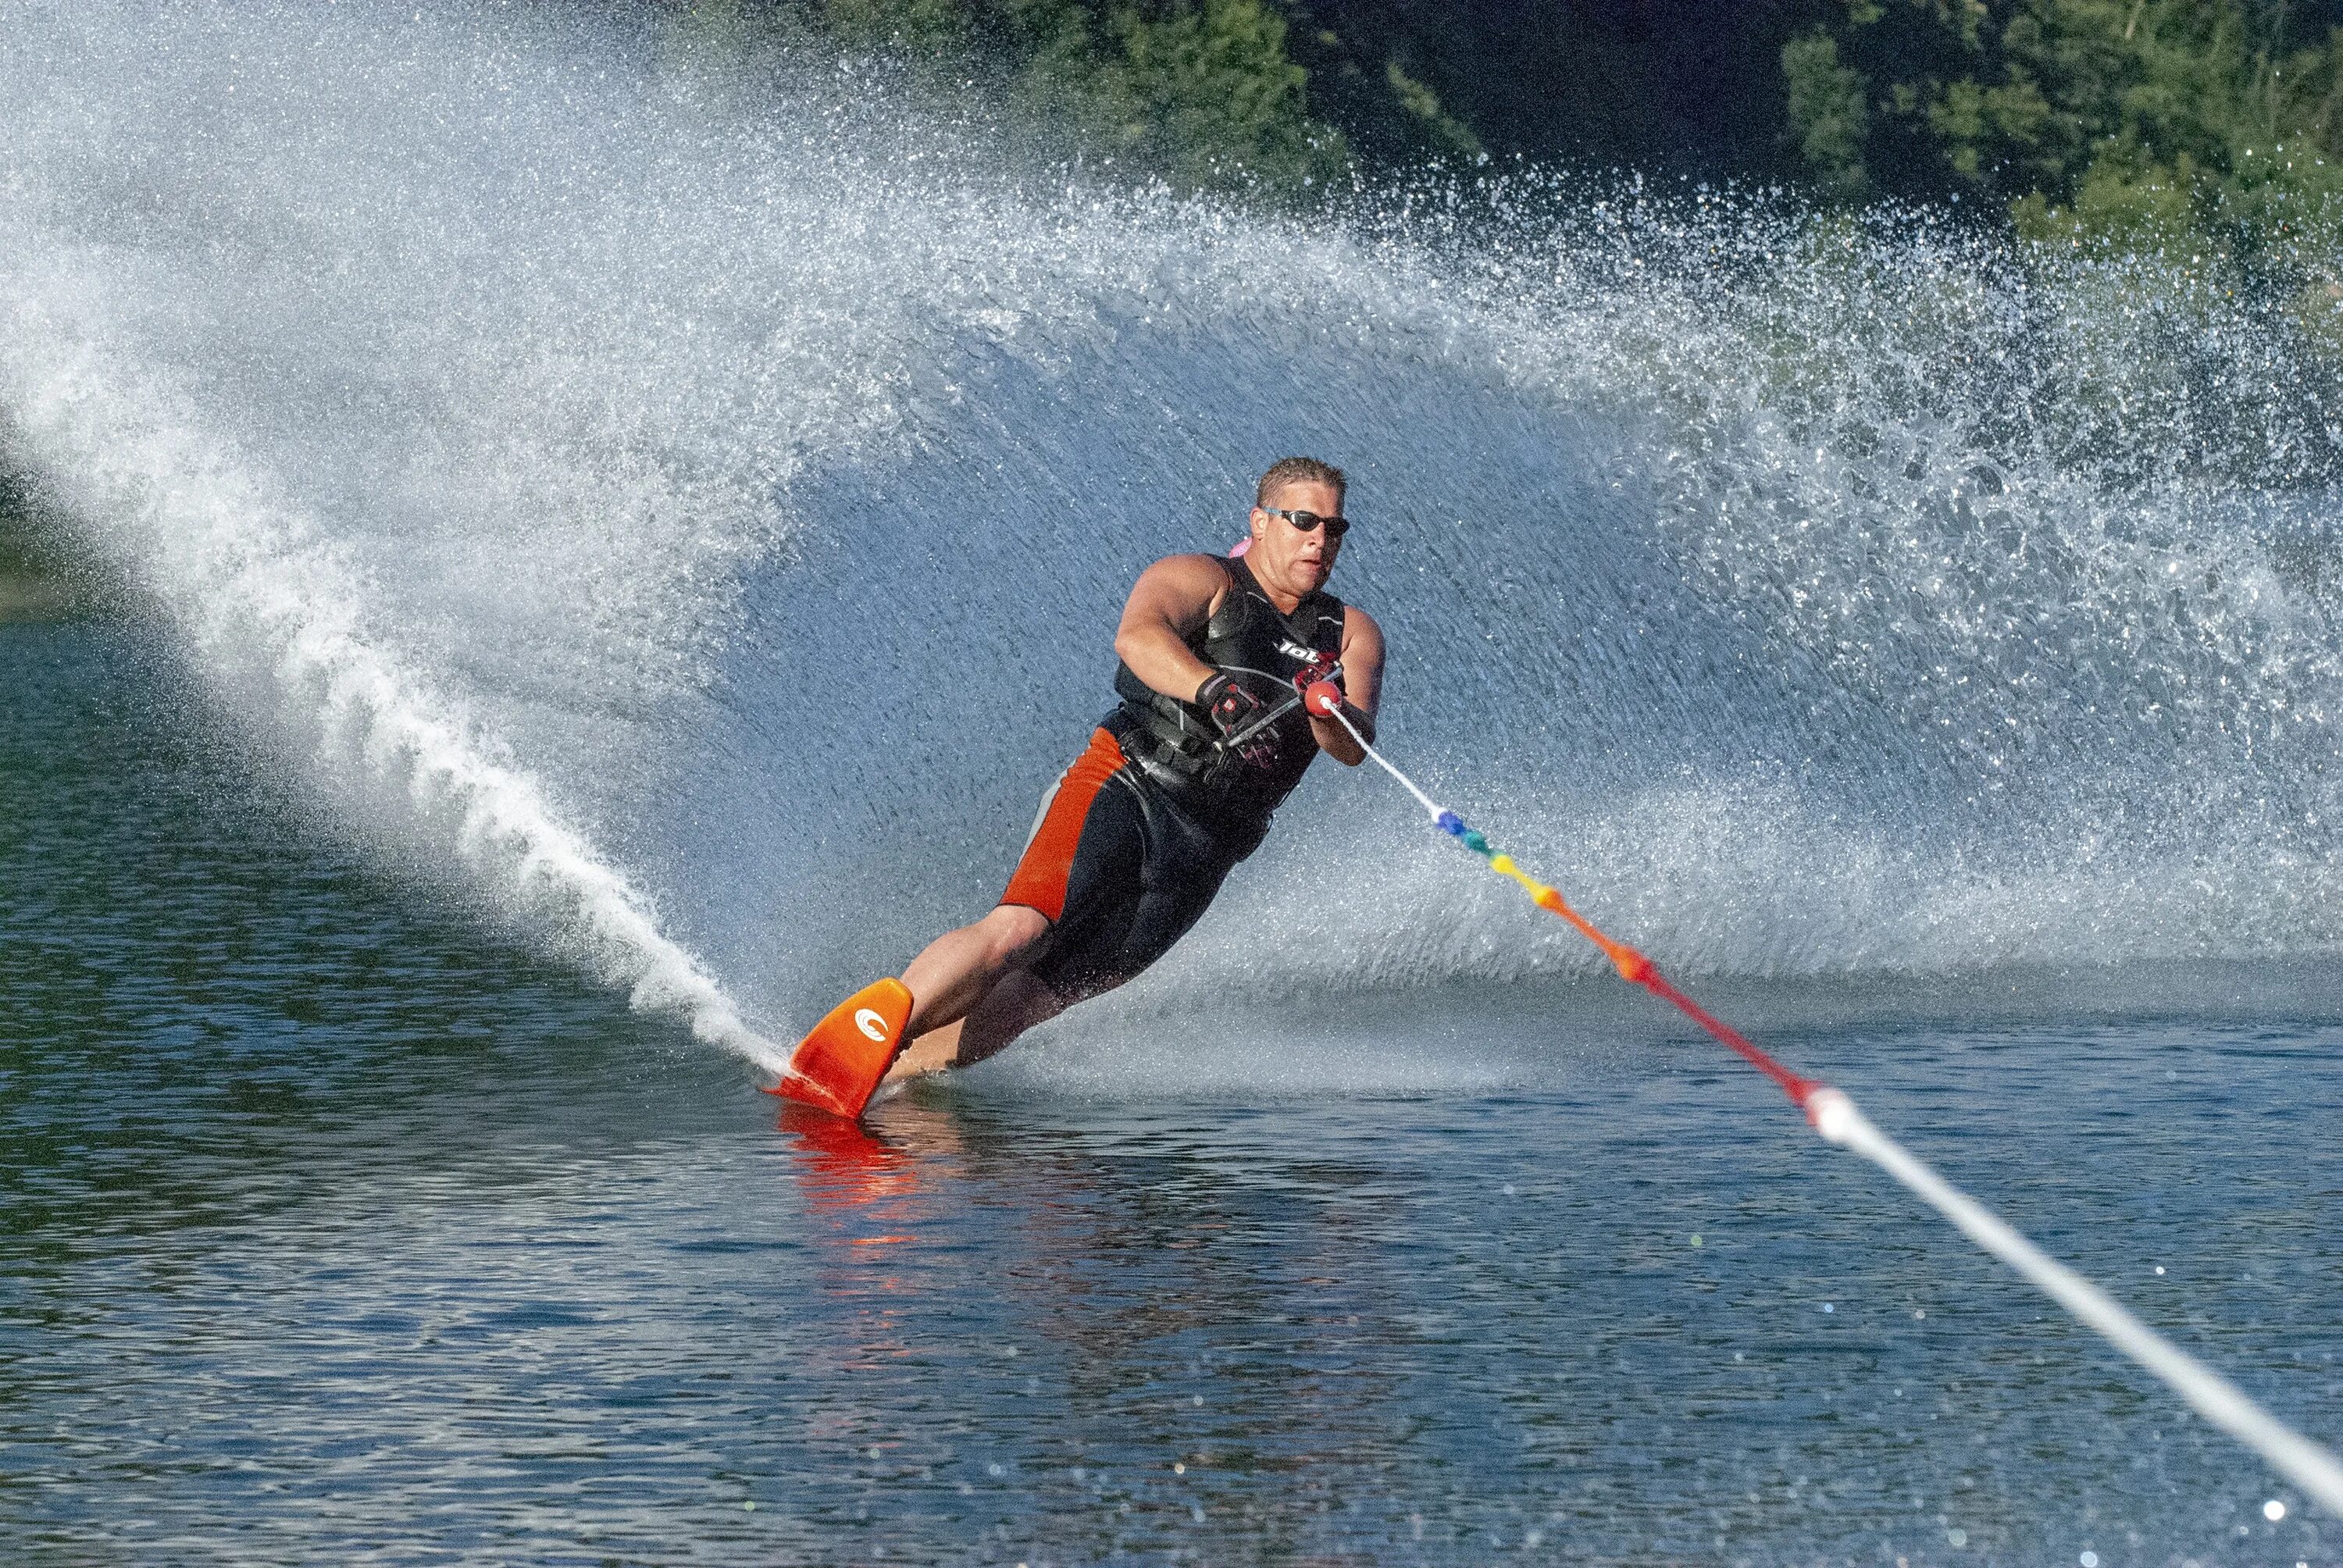 Ральф Самуэльсон водные лыжи. Катание на водных лыжах. Человек на водных лыжах. Водный спорт. Do water sport